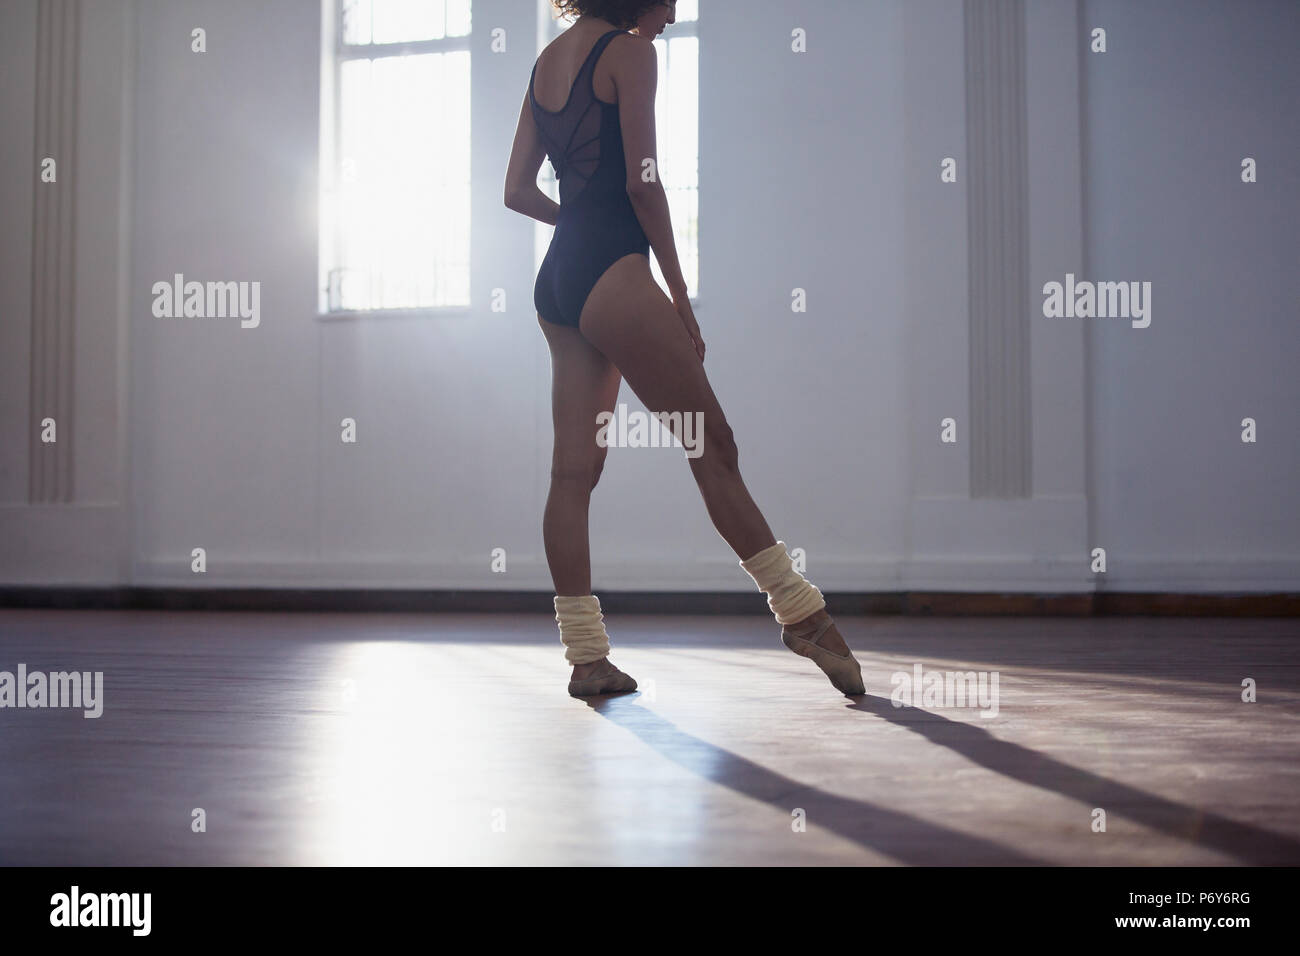 Jeune femme gracieuse danseuse de ballet qui pratique dans un studio de danse Banque D'Images